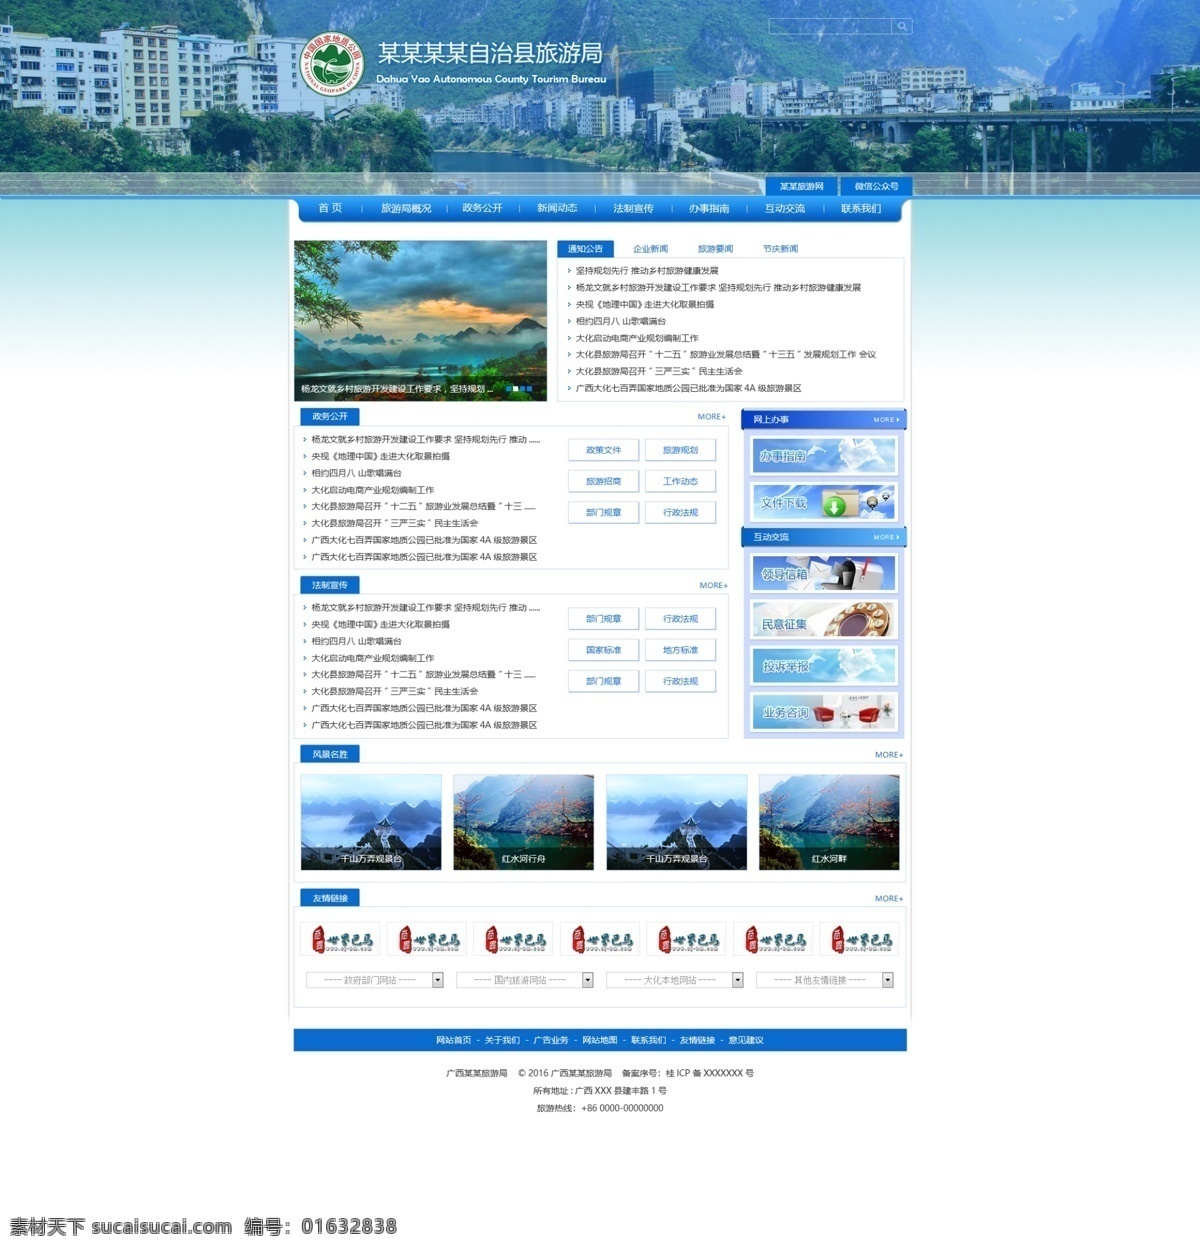 旅游网站设计 旅游网站模板 旅游网站 网站 网站模板 网站设计 网页设计模板 ui web 界面设计 中文模板